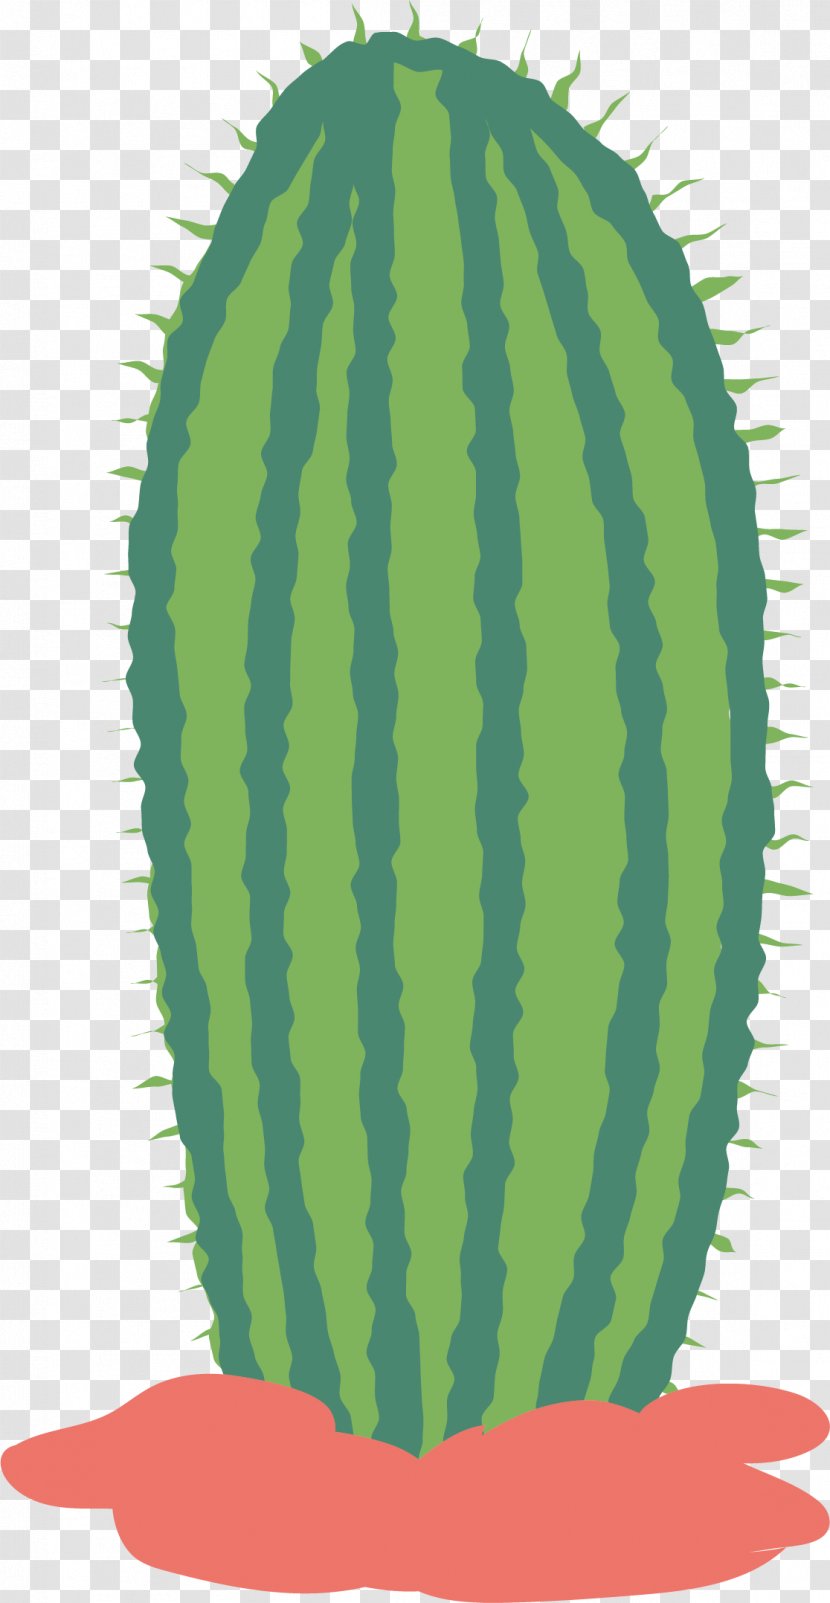 Watermelon Euclidean Vector Illustration - Melon - Cactus Transparent PNG